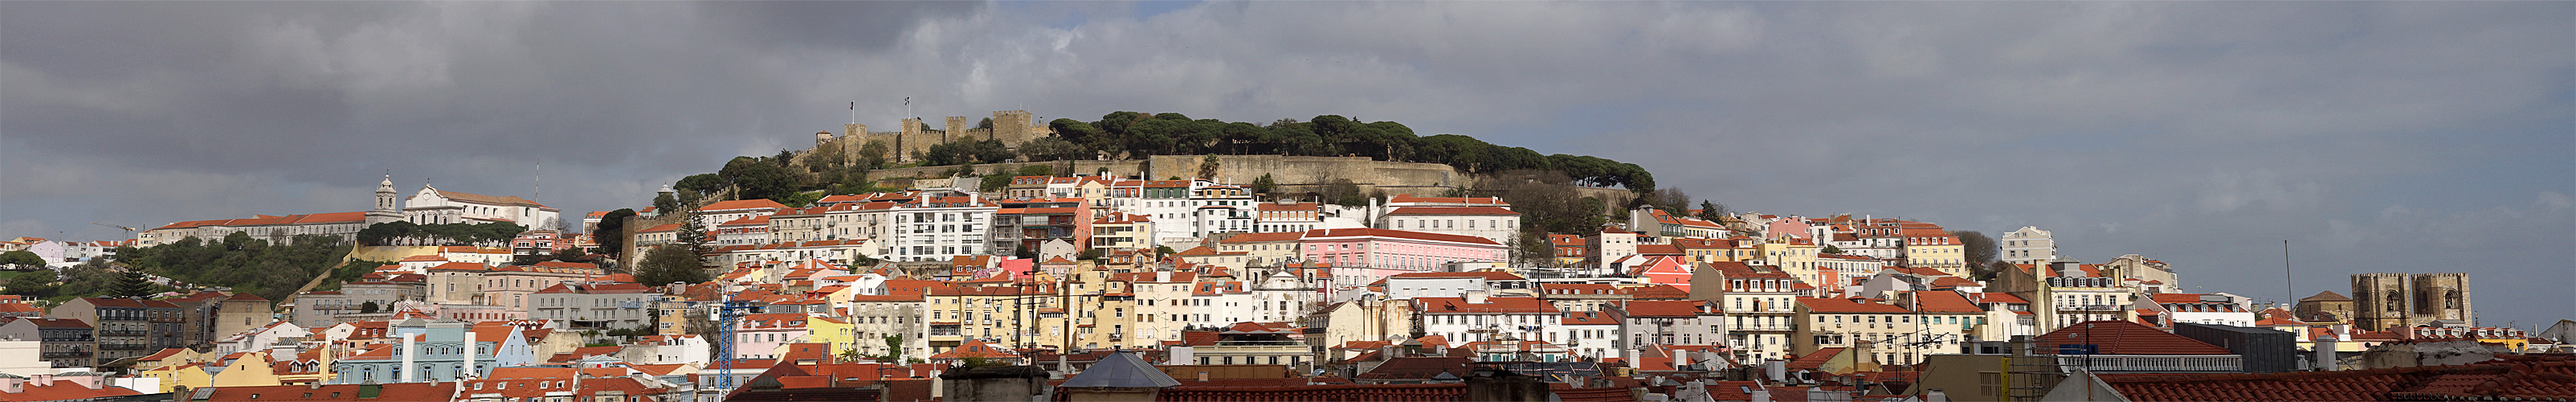 Photo panoramique du couvent [q]Nossa Senhora de Graça[q], du [q]Castelo de São Jorge[q] et de la cathédrale [q]Sé Patriarcal[q]